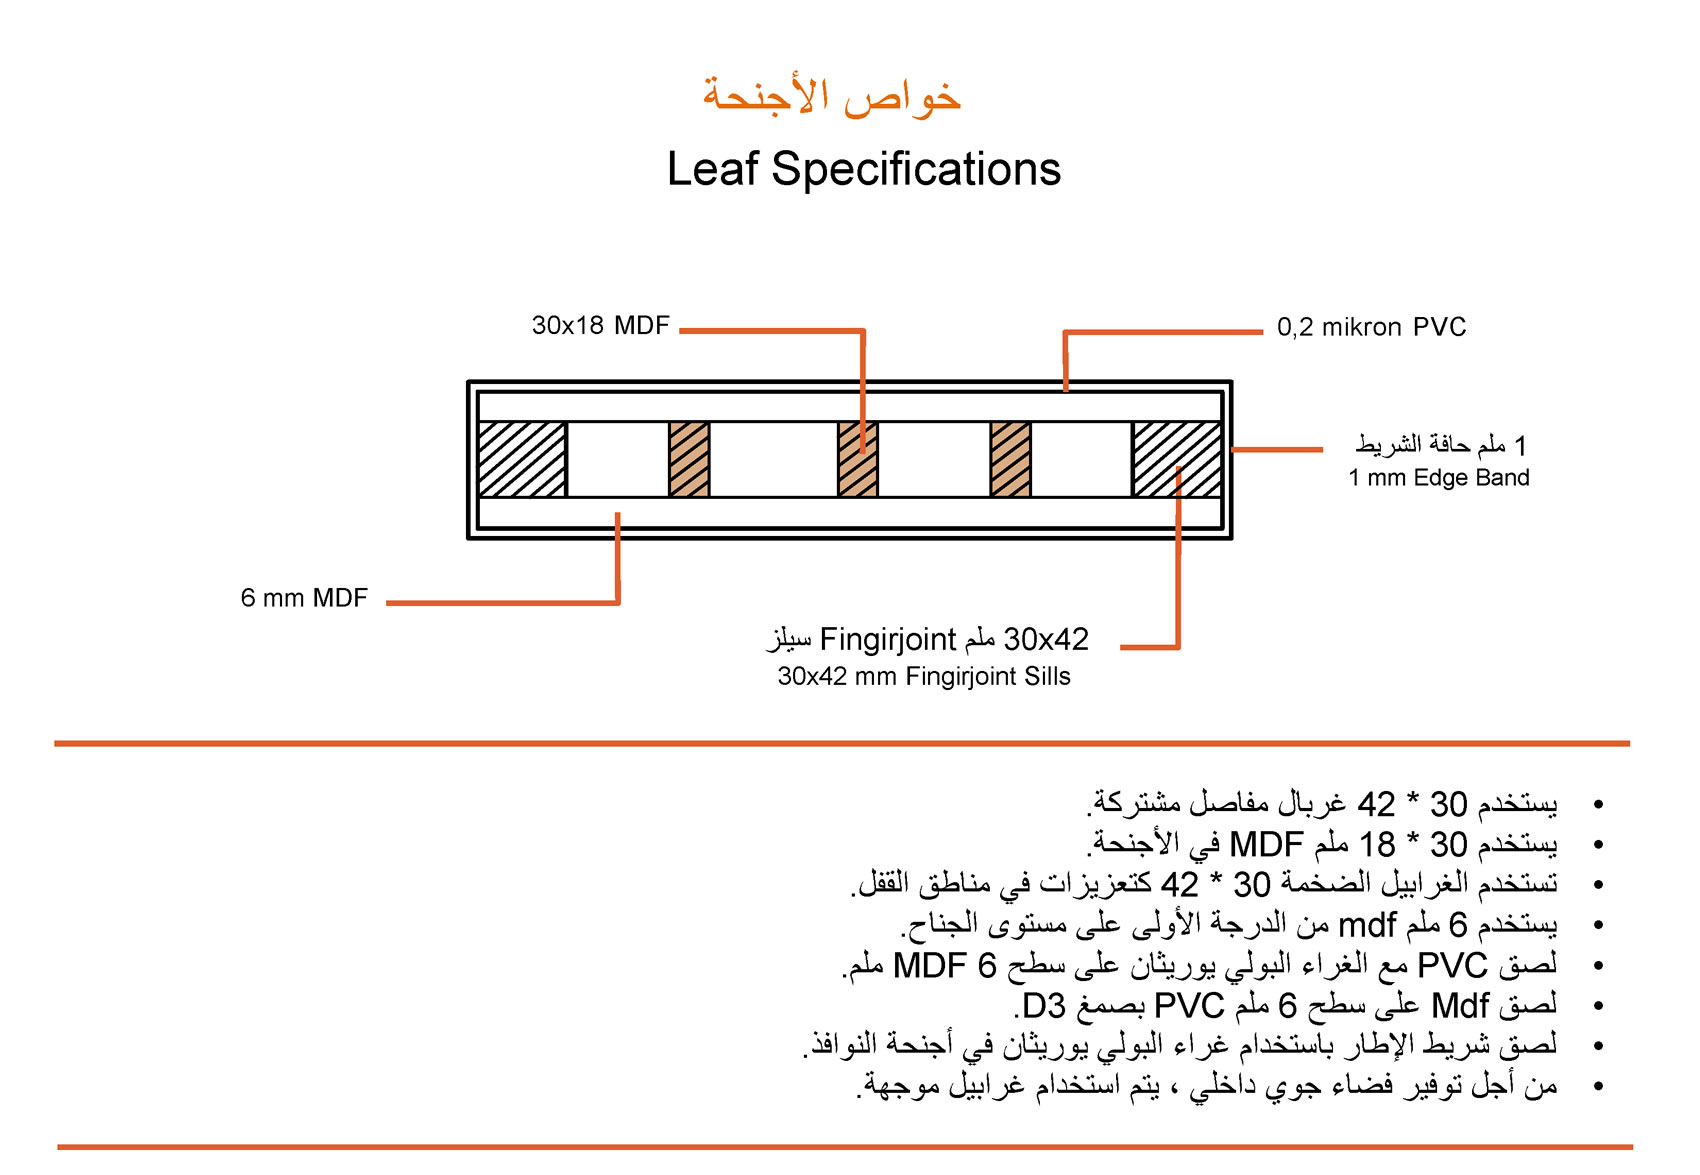 yilsan_leaf_specifications_ar